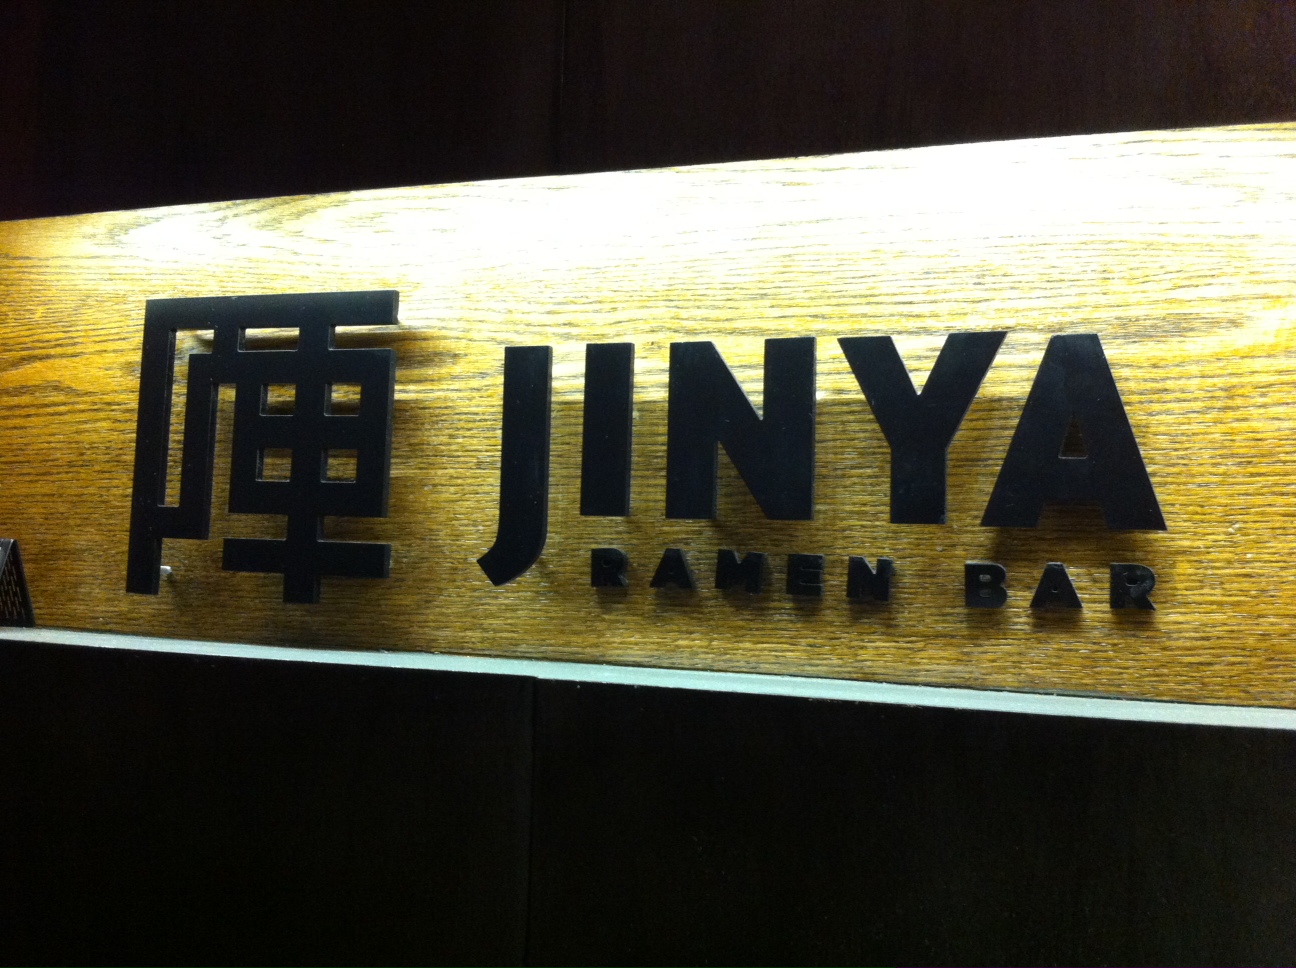 Jinya Ramen Bar